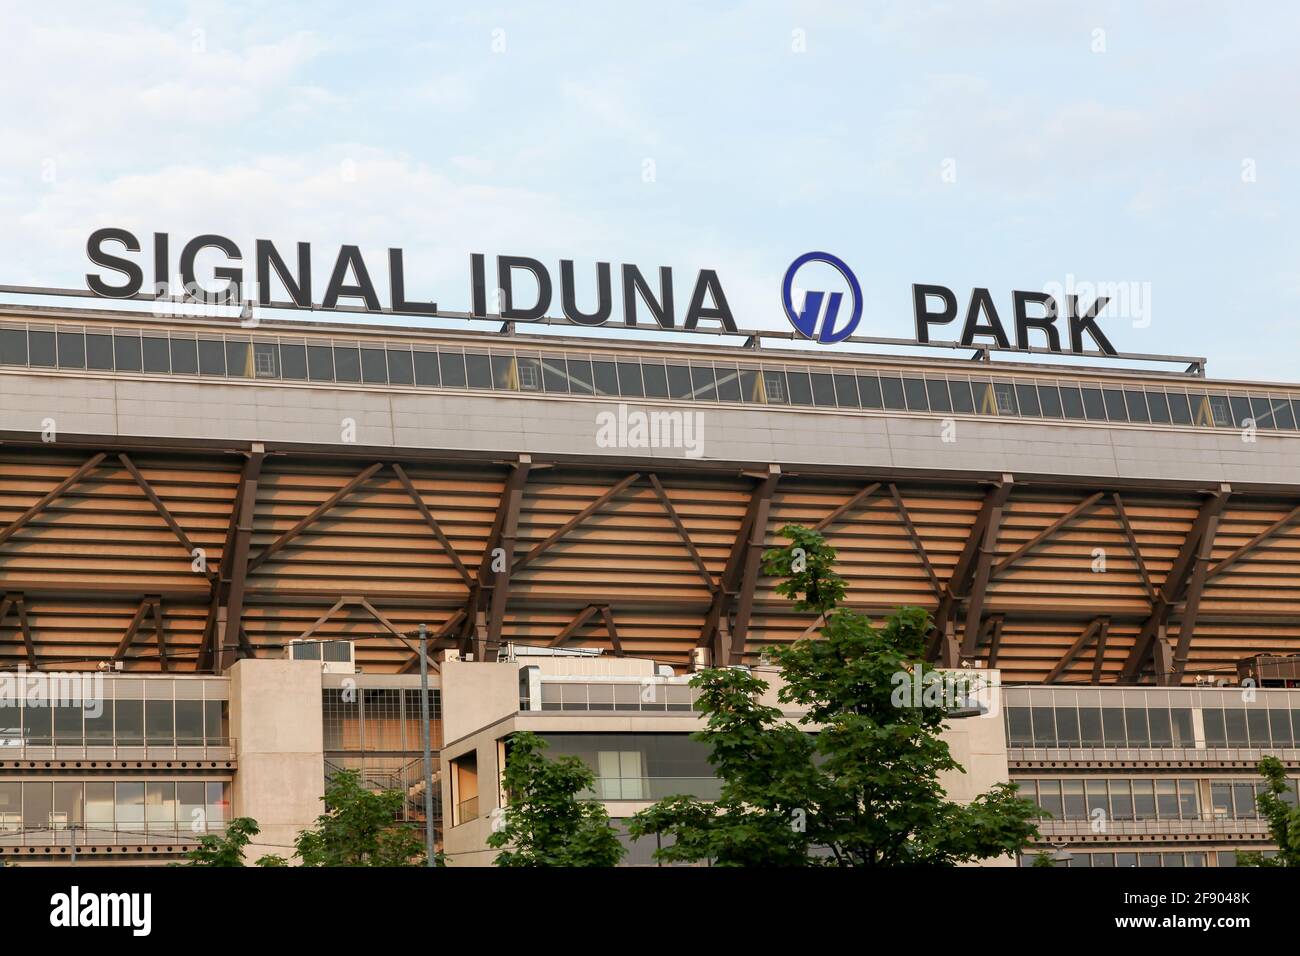 Dortmund, Allemagne - 24 juillet 2016 : signal Iduna Park est un stade de football à Dortmund, en Allemagne, qui est la maison de Borussia Dortmund Banque D'Images